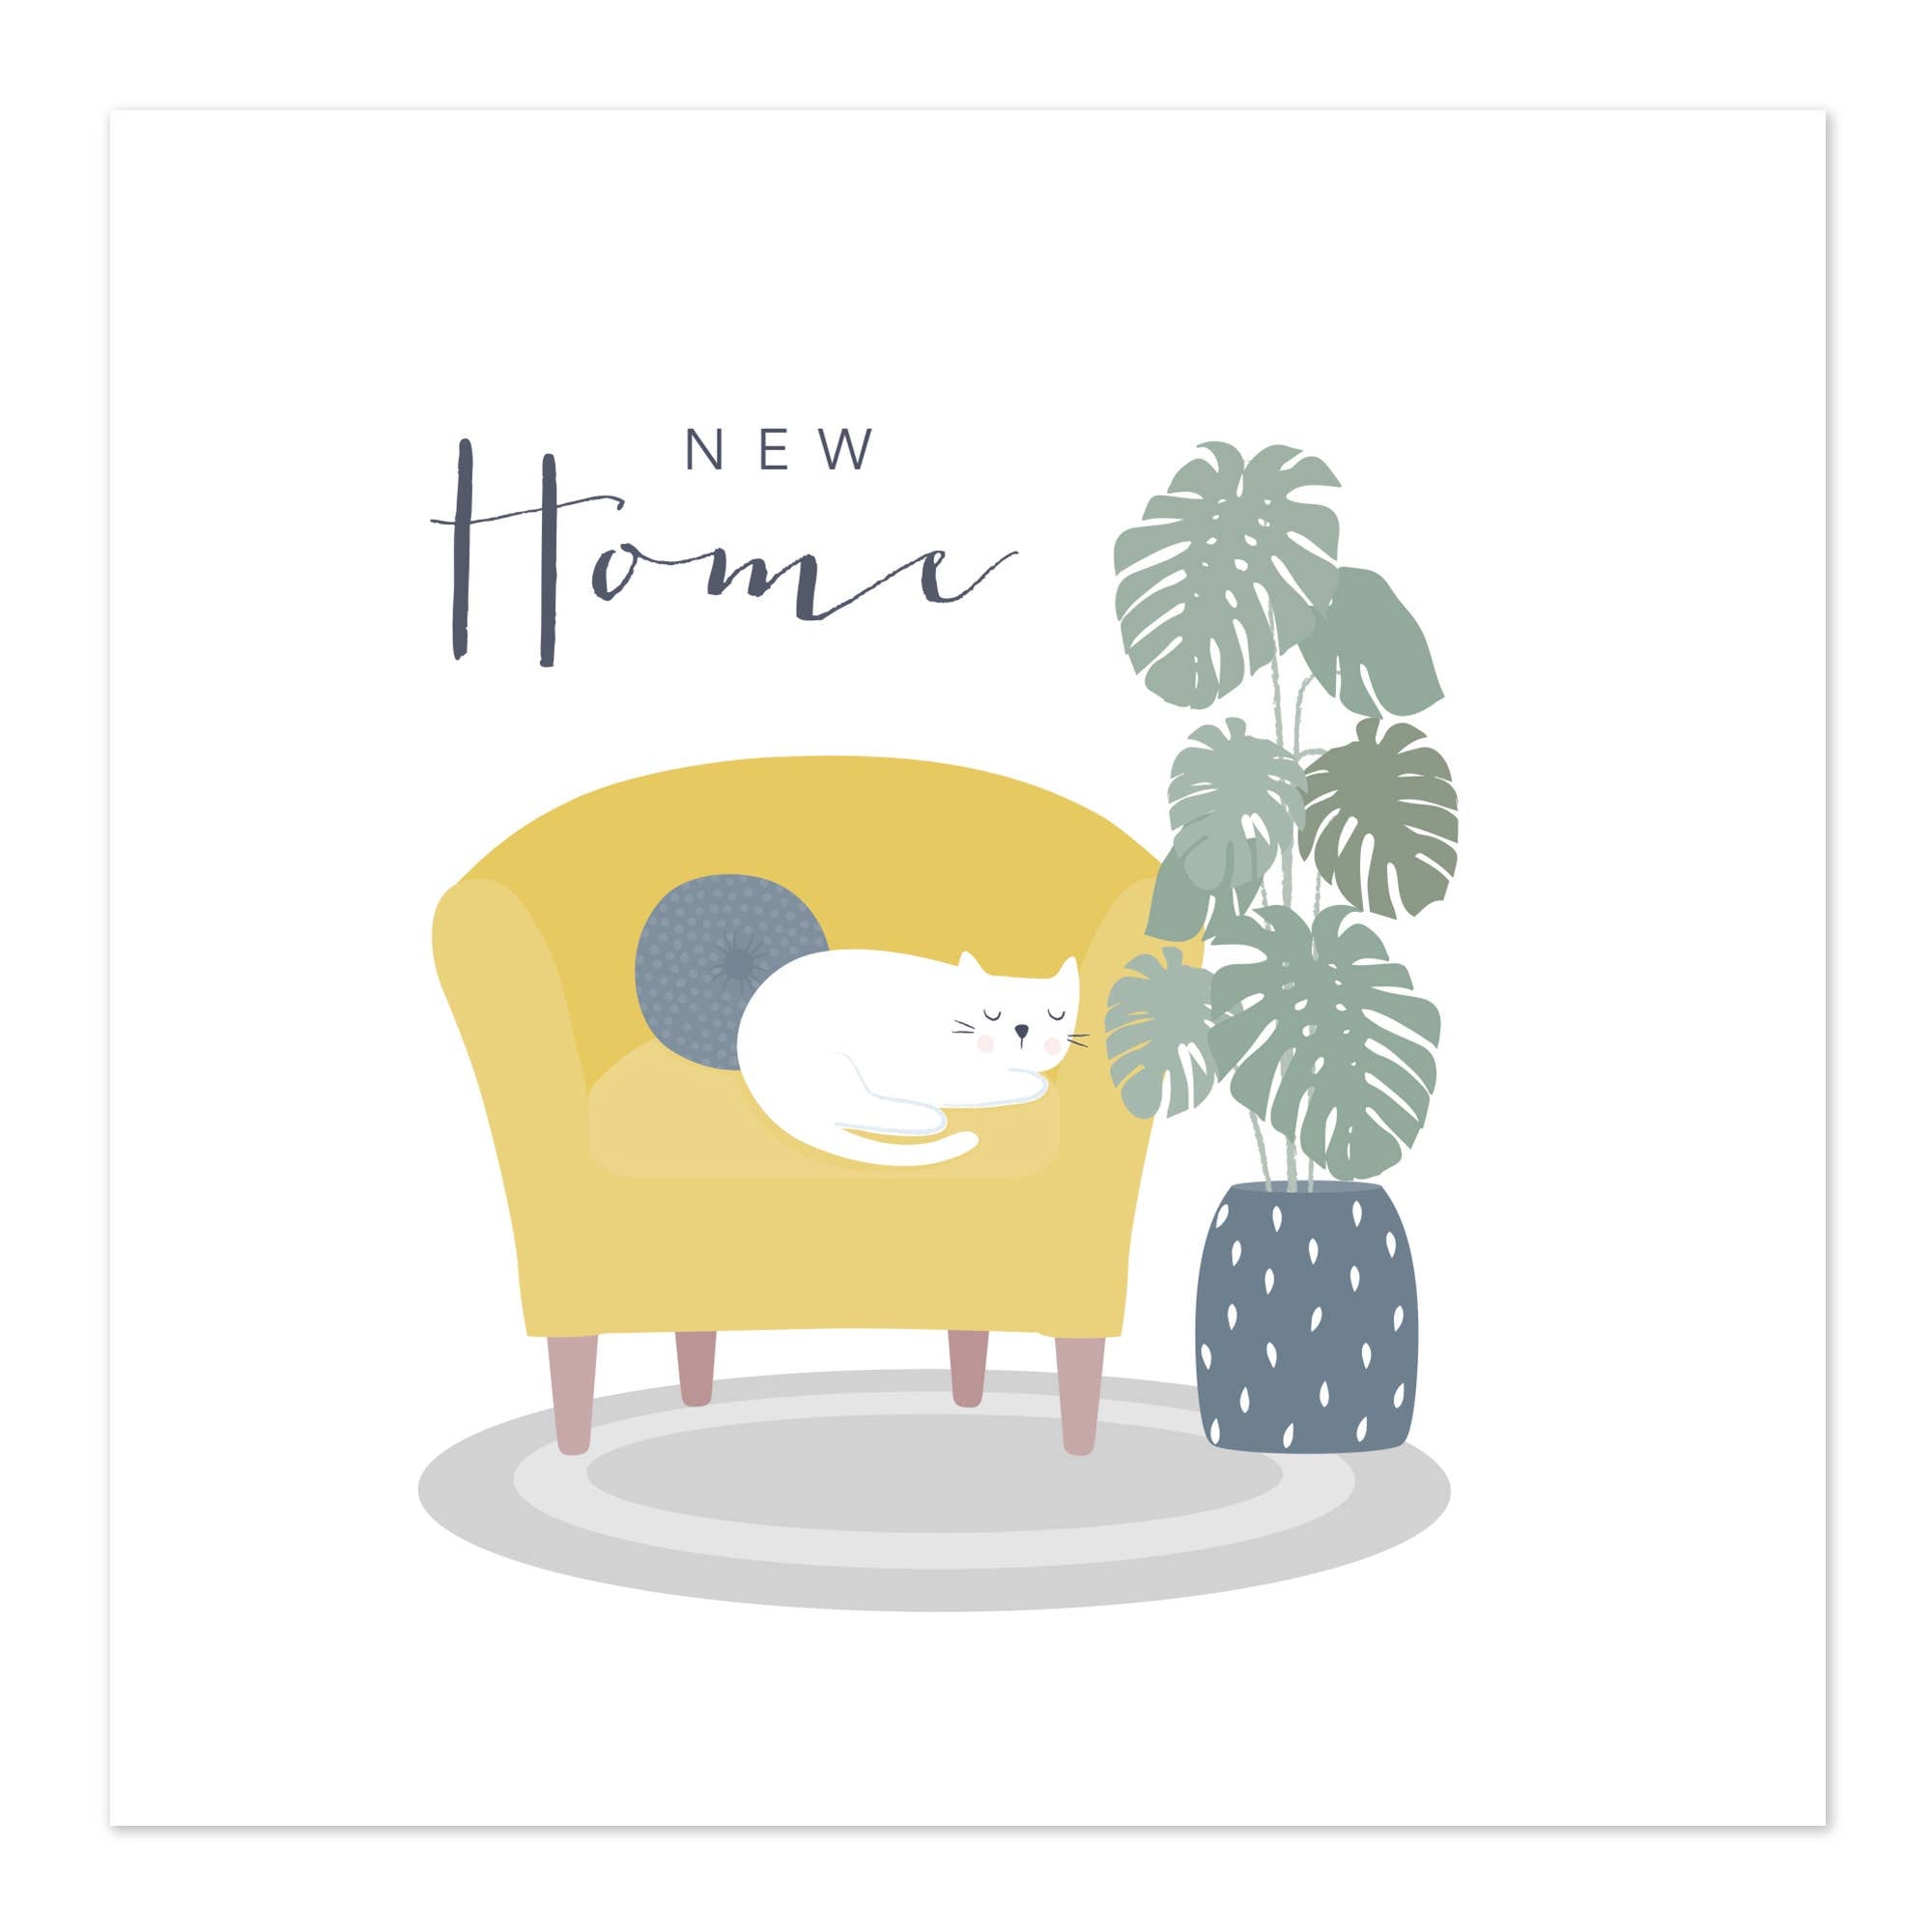 New Home Card - Cat Sleeping in Chair by Klara Hawkins